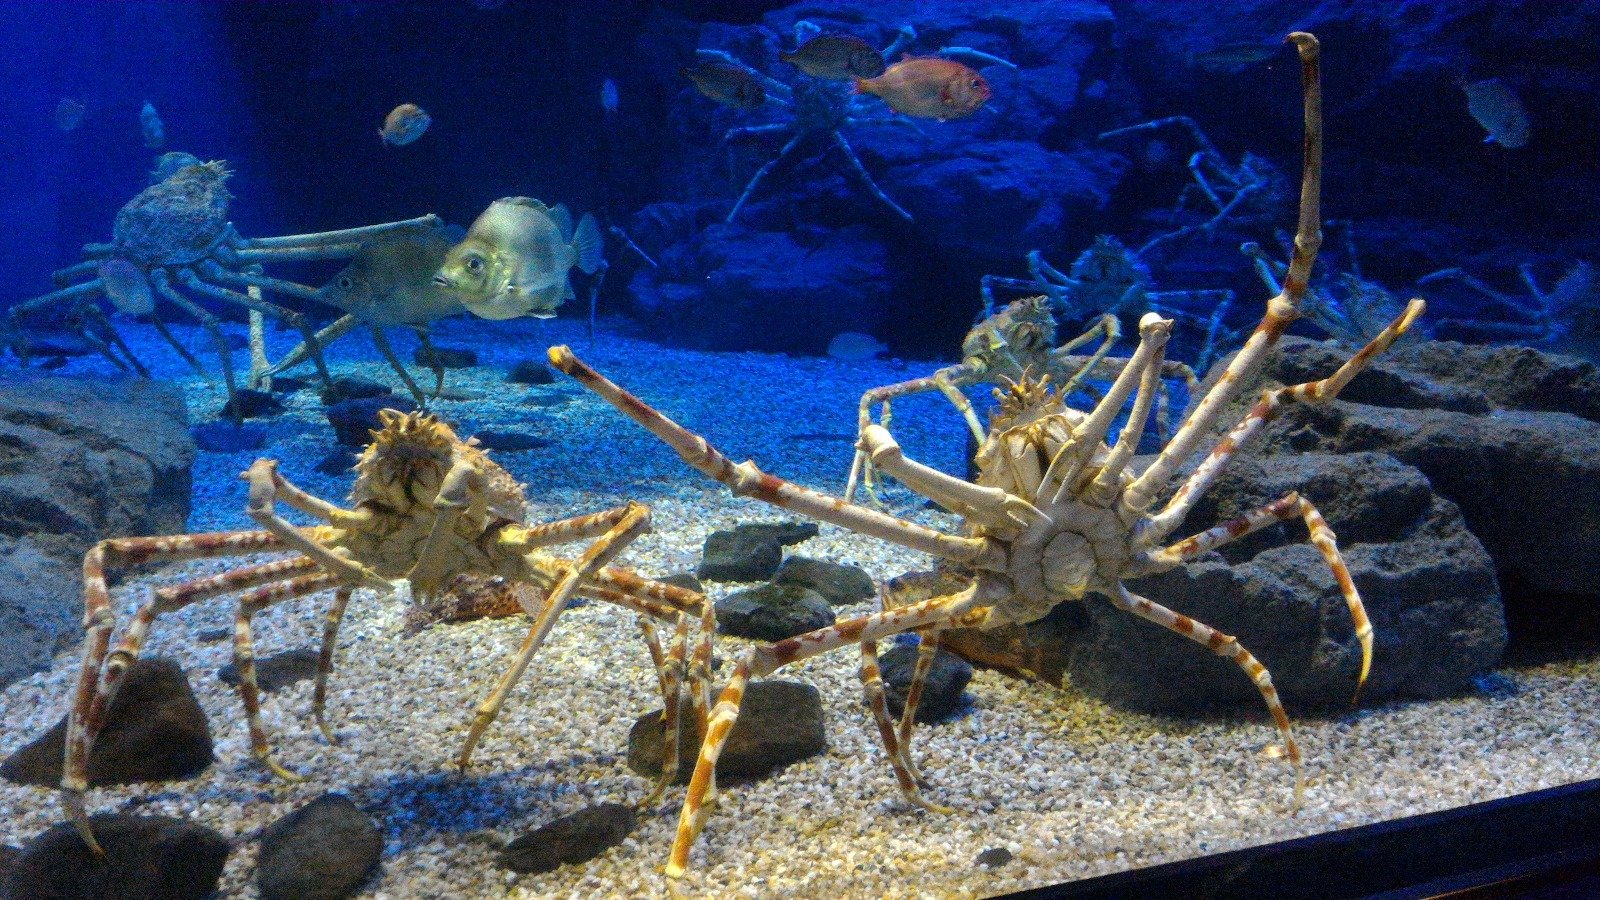 如果喜欢海底世界，大阪的海游馆将是极佳的景点选择。图中的巨蟹因长时间维持同样的姿势，而引起大家的注意。